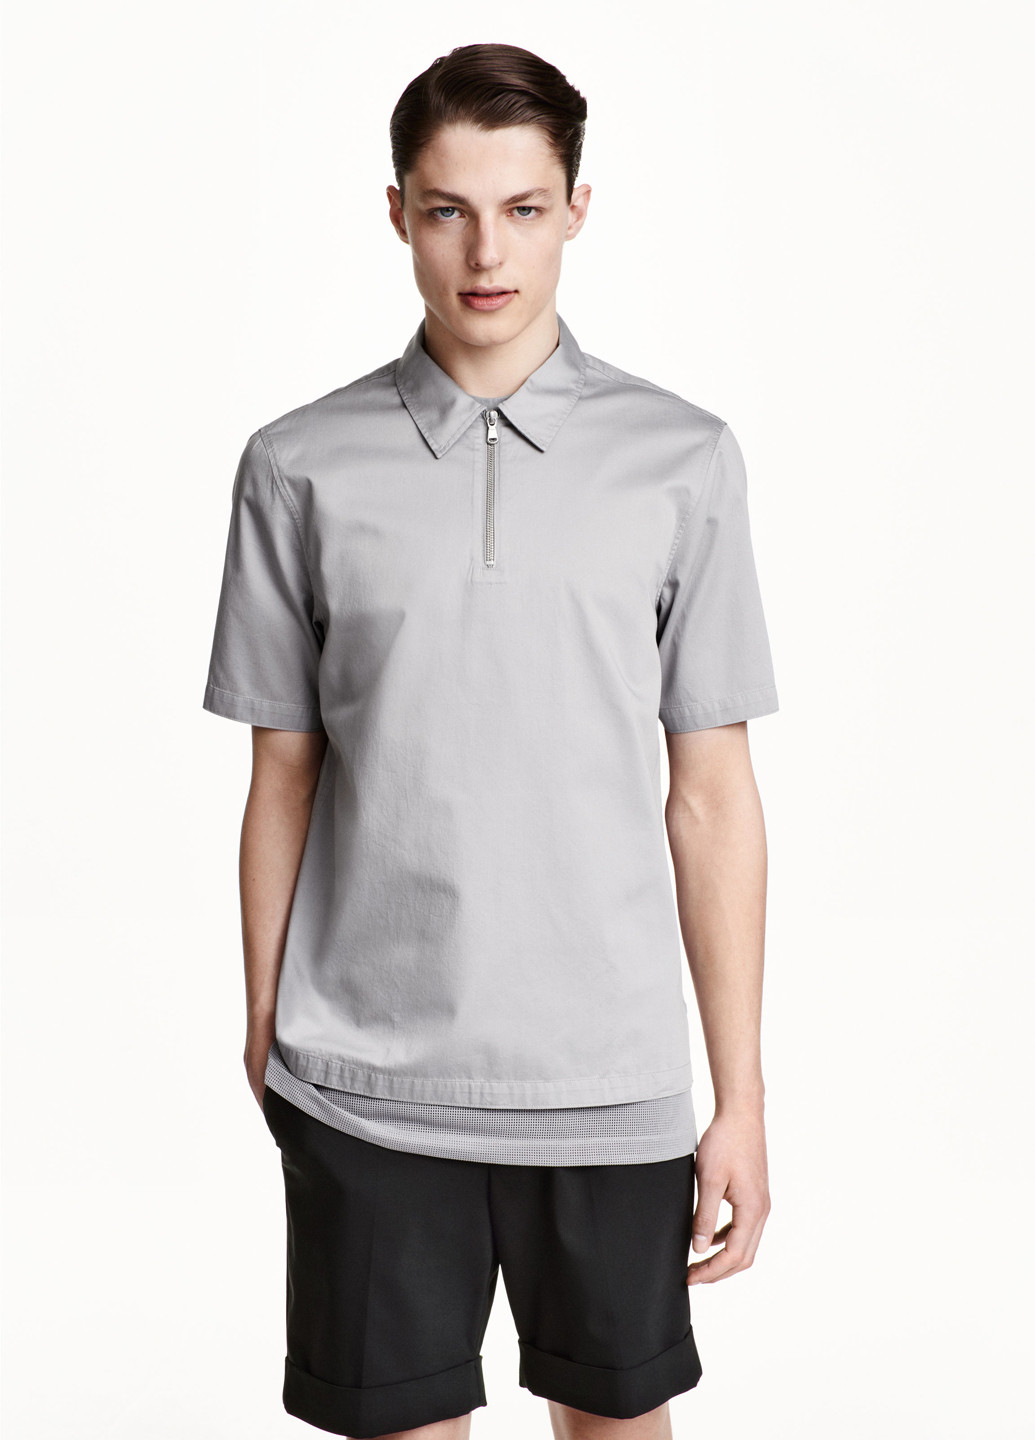 Светло-серая футболка-поло для мужчин H&M однотонная